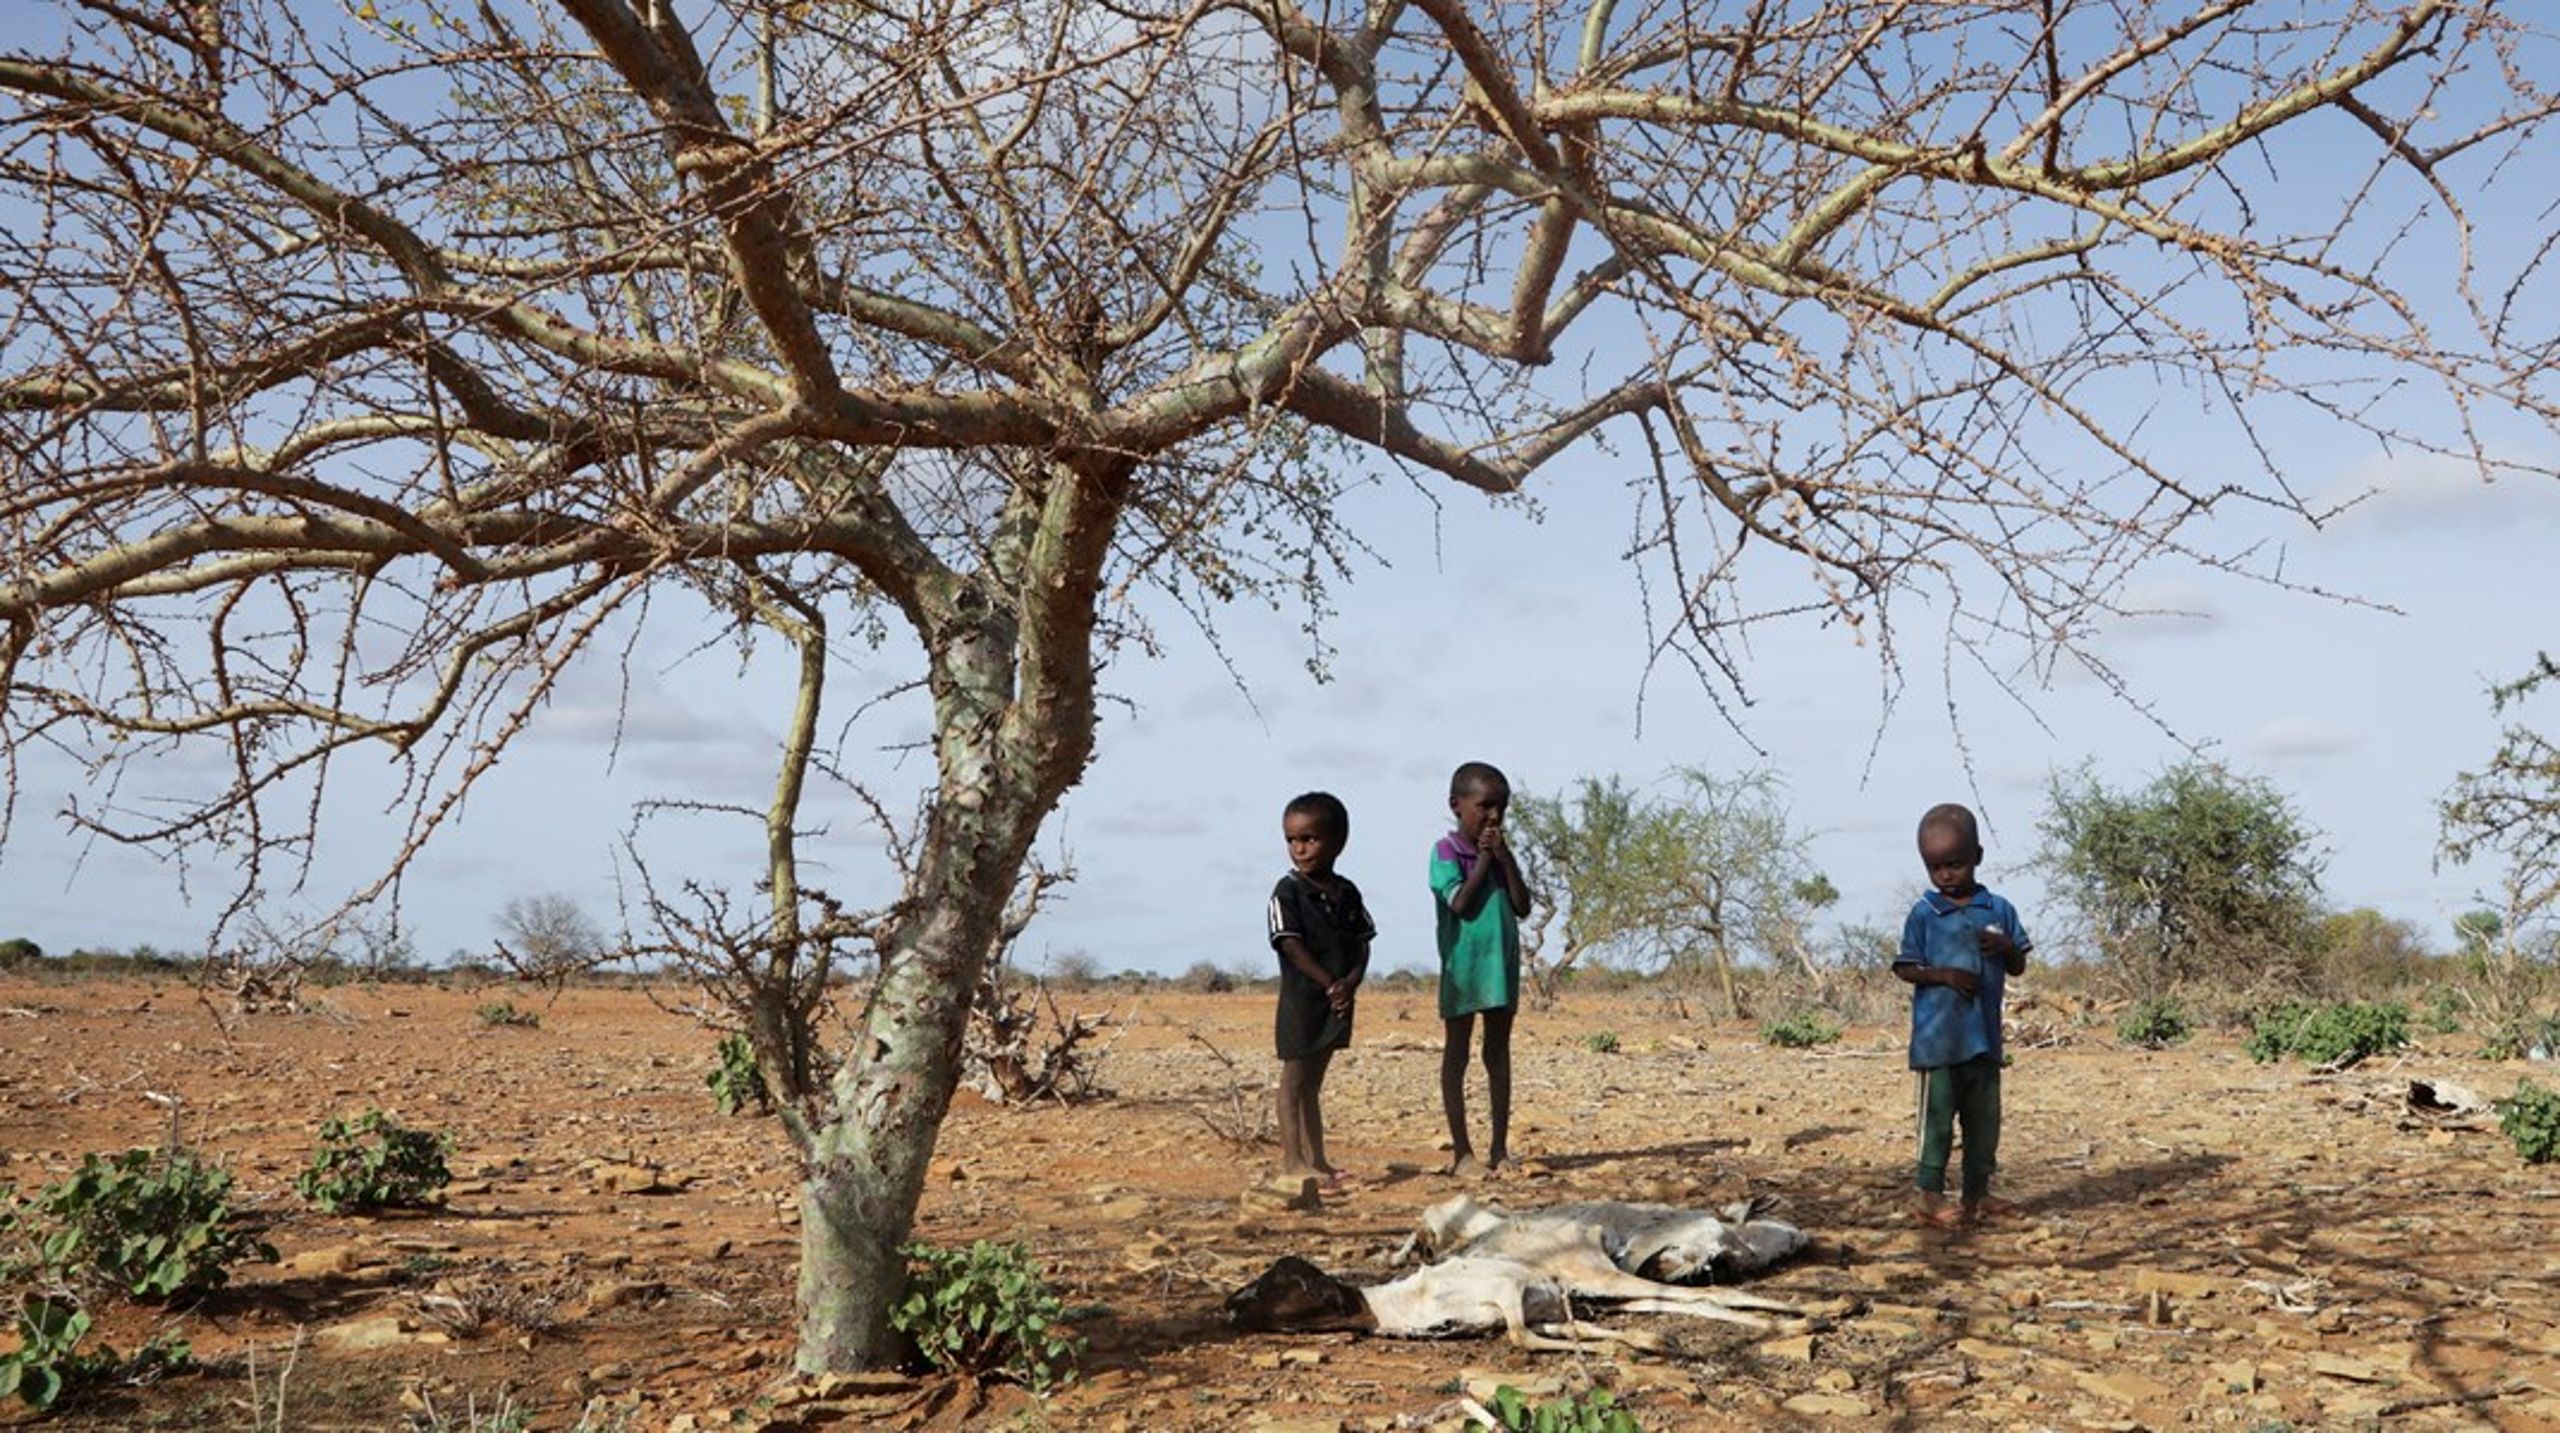 Situationen i Somalia&nbsp;er hamrende alvorlig, skriver Helle Gudmundsen og Jakob Eilsøe Mikkelsen. Arkivfoto.